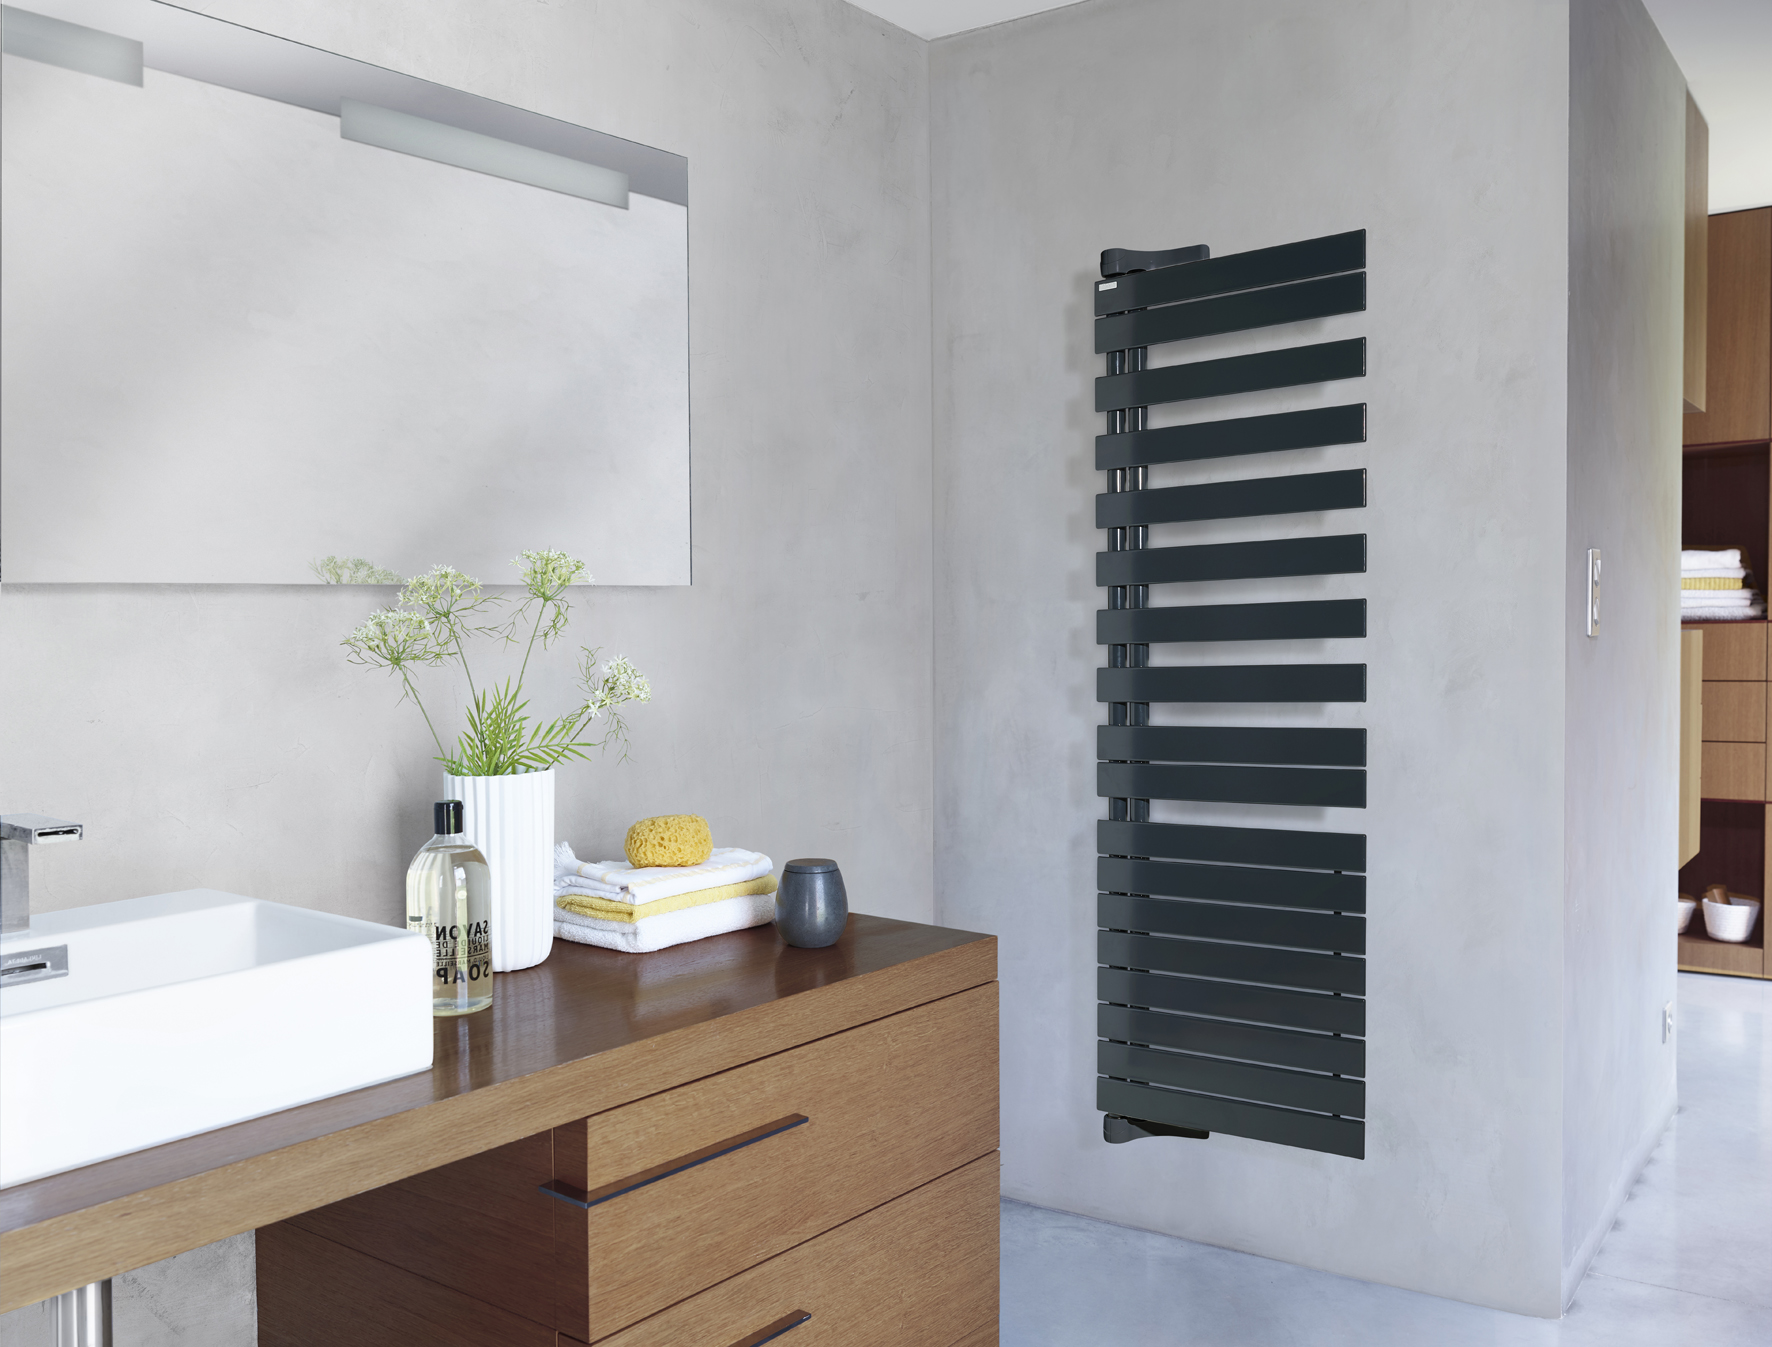 Radiateur sèche-serviettes Acova Fassane Spa Twist : une fonction pivotante, des serviettes chaudes encore plus accessibles à la sortie de la douche